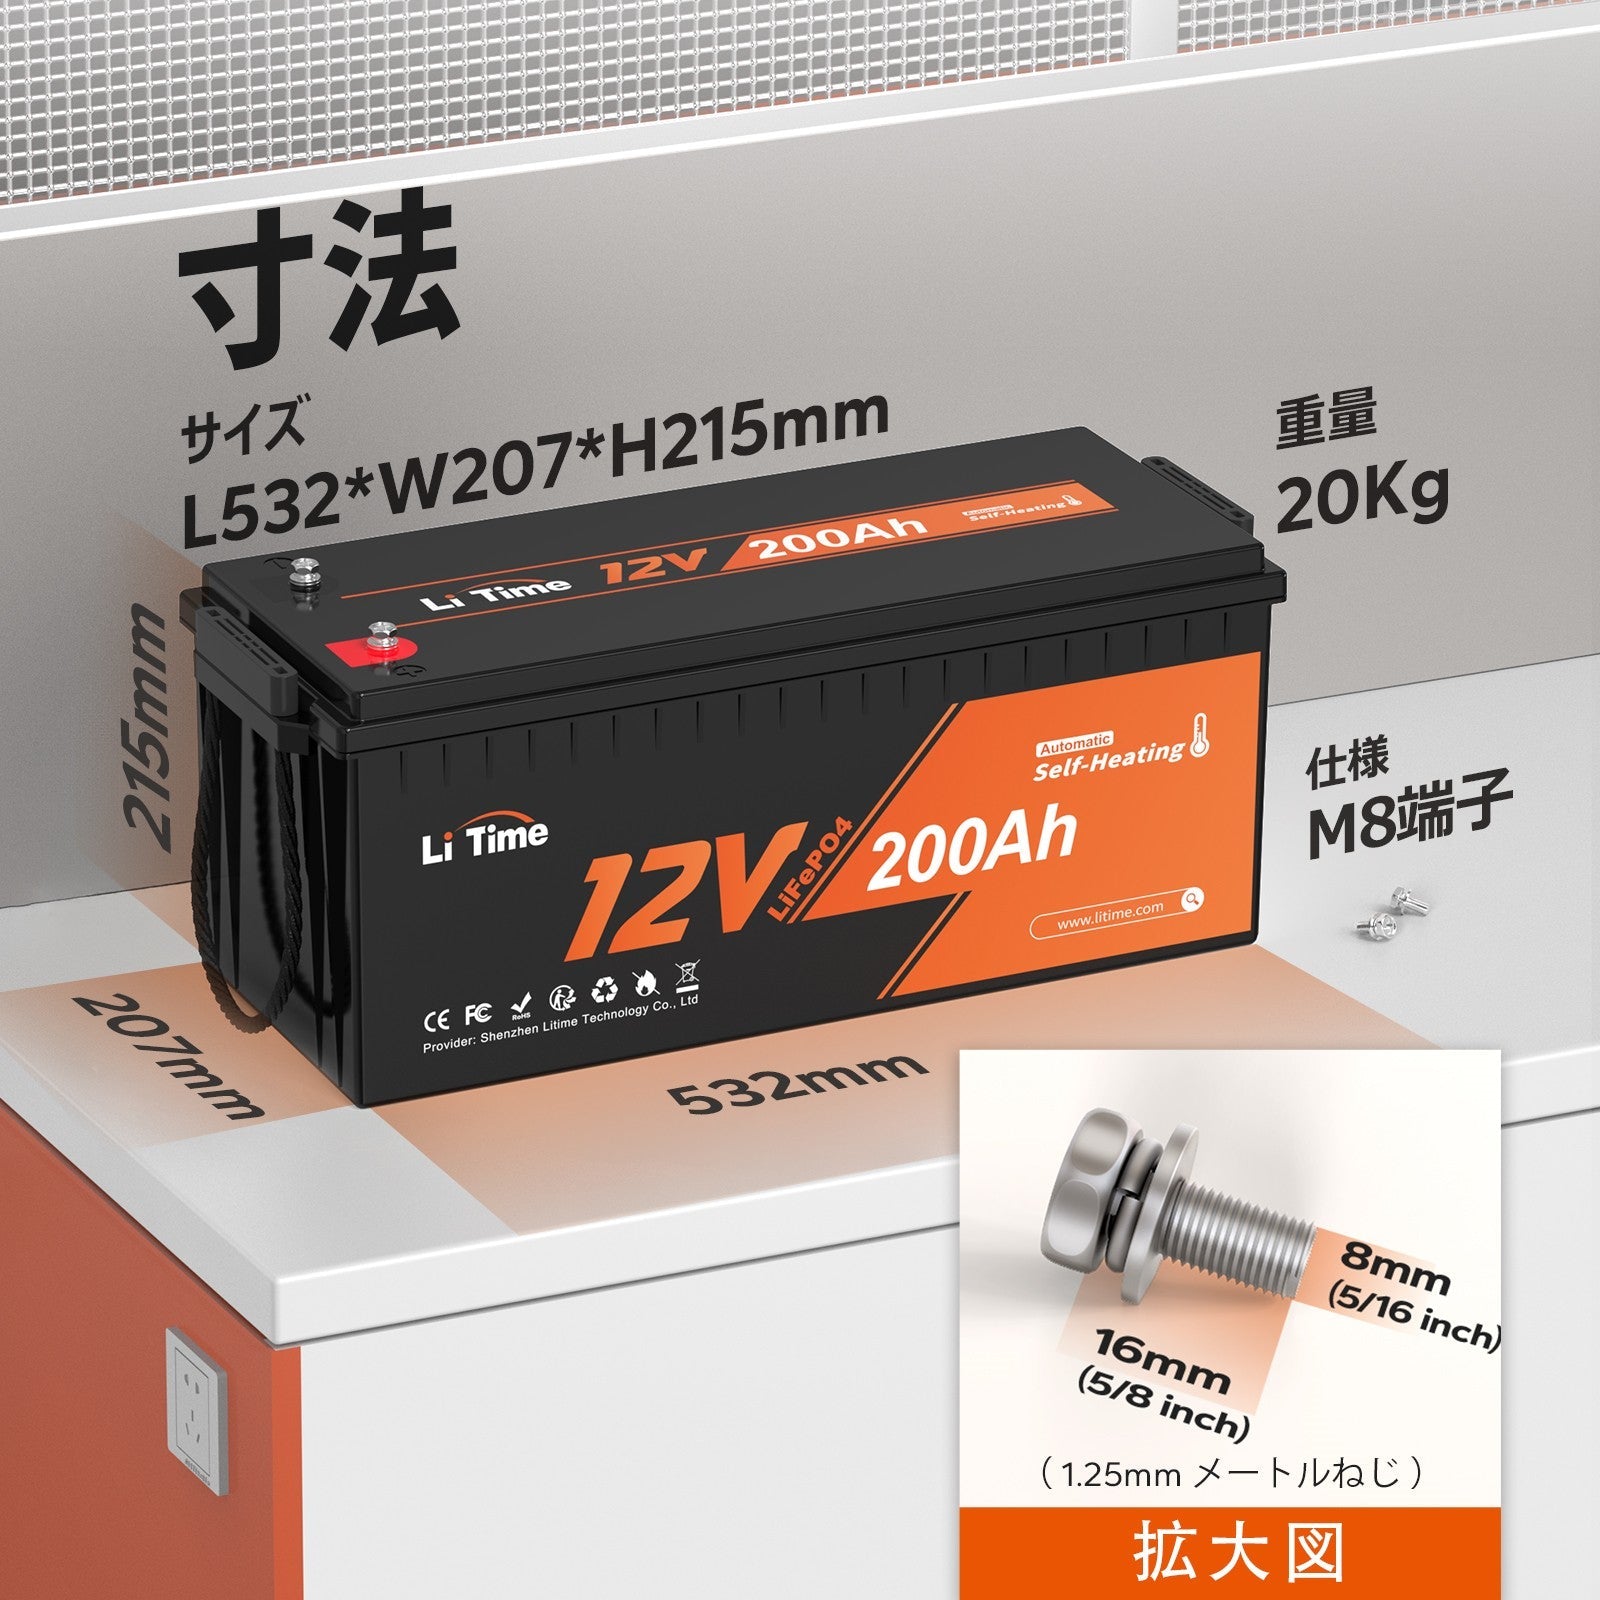 LiTime 自己加熱機能 12V200Ahリン酸鉄リチウムイオンバッテリー LiTime-JP